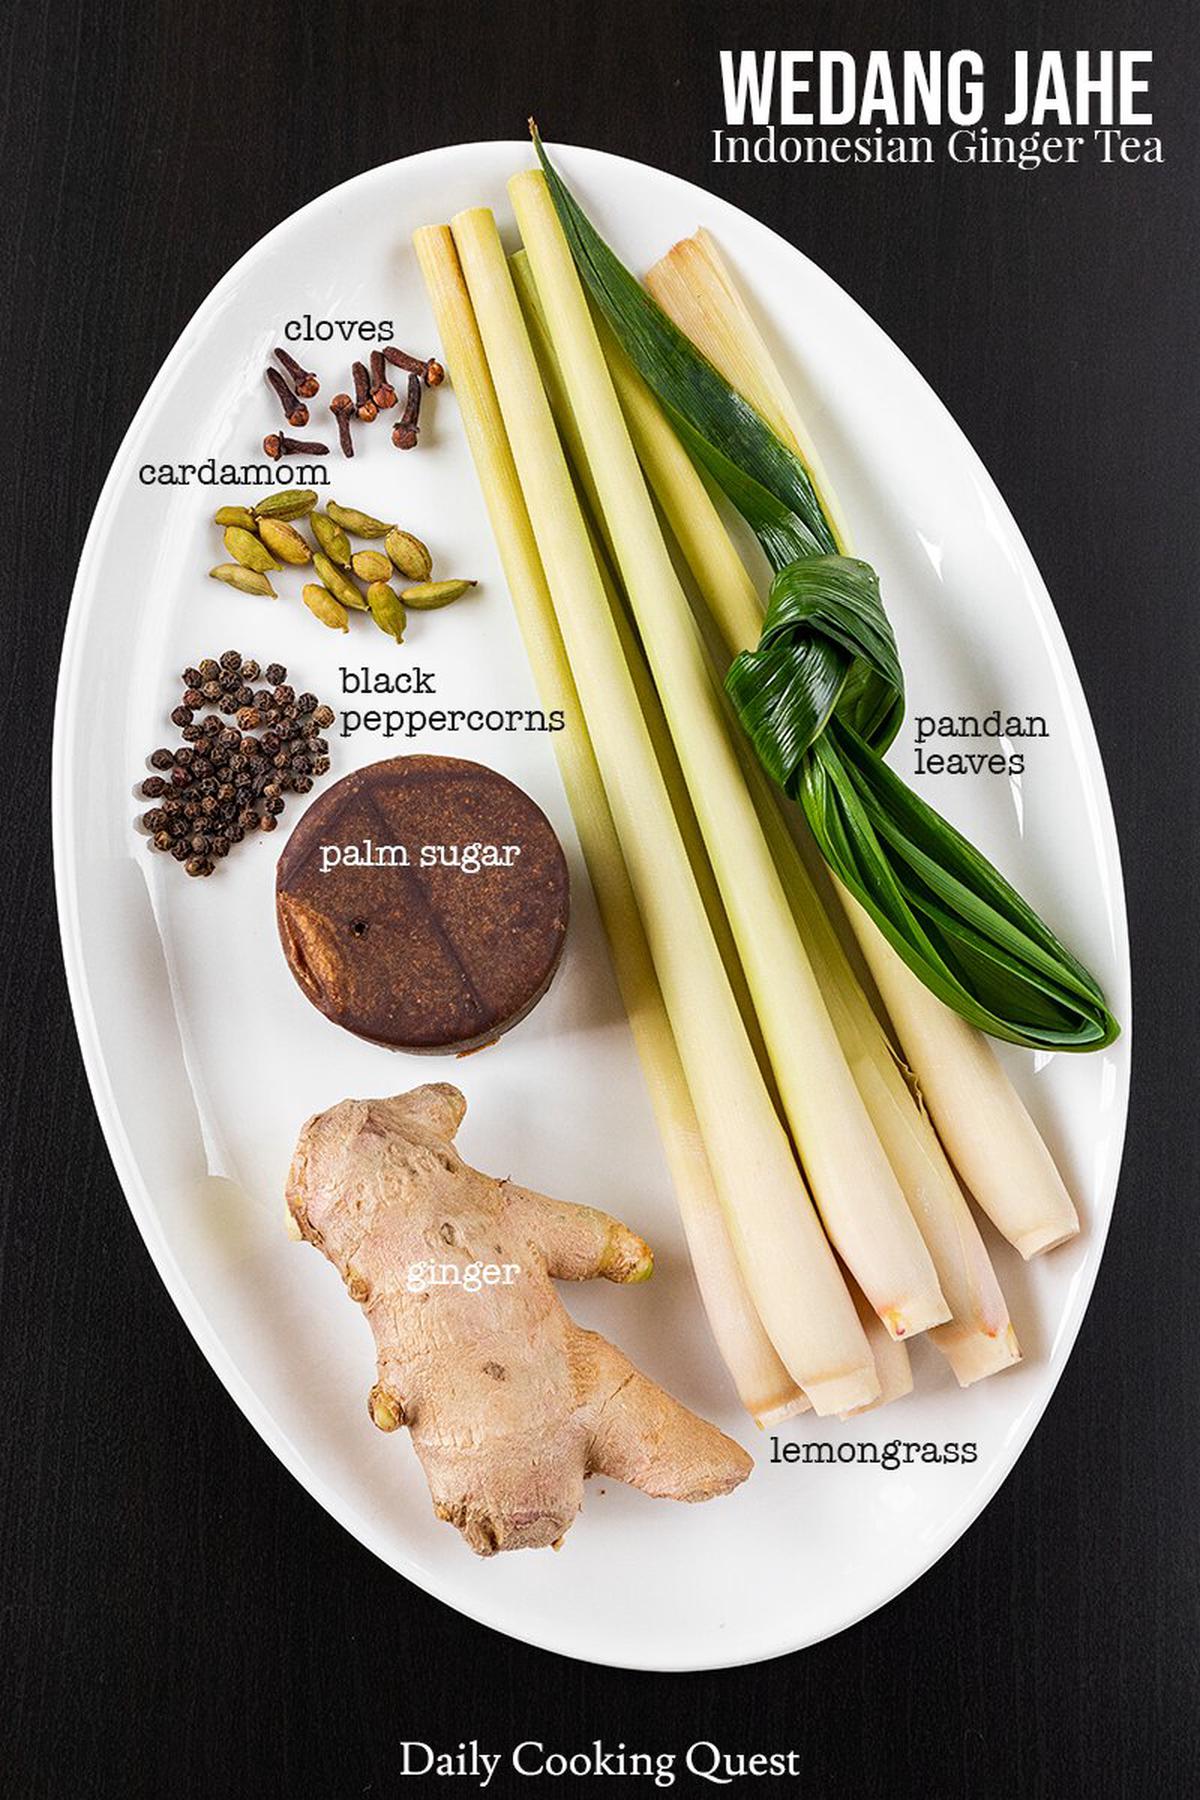 Ingredients to prepare wedang jahe: ginger, palm sugar, lemongrass, pandan leaves, black peppercorns, cardamom, cloves.